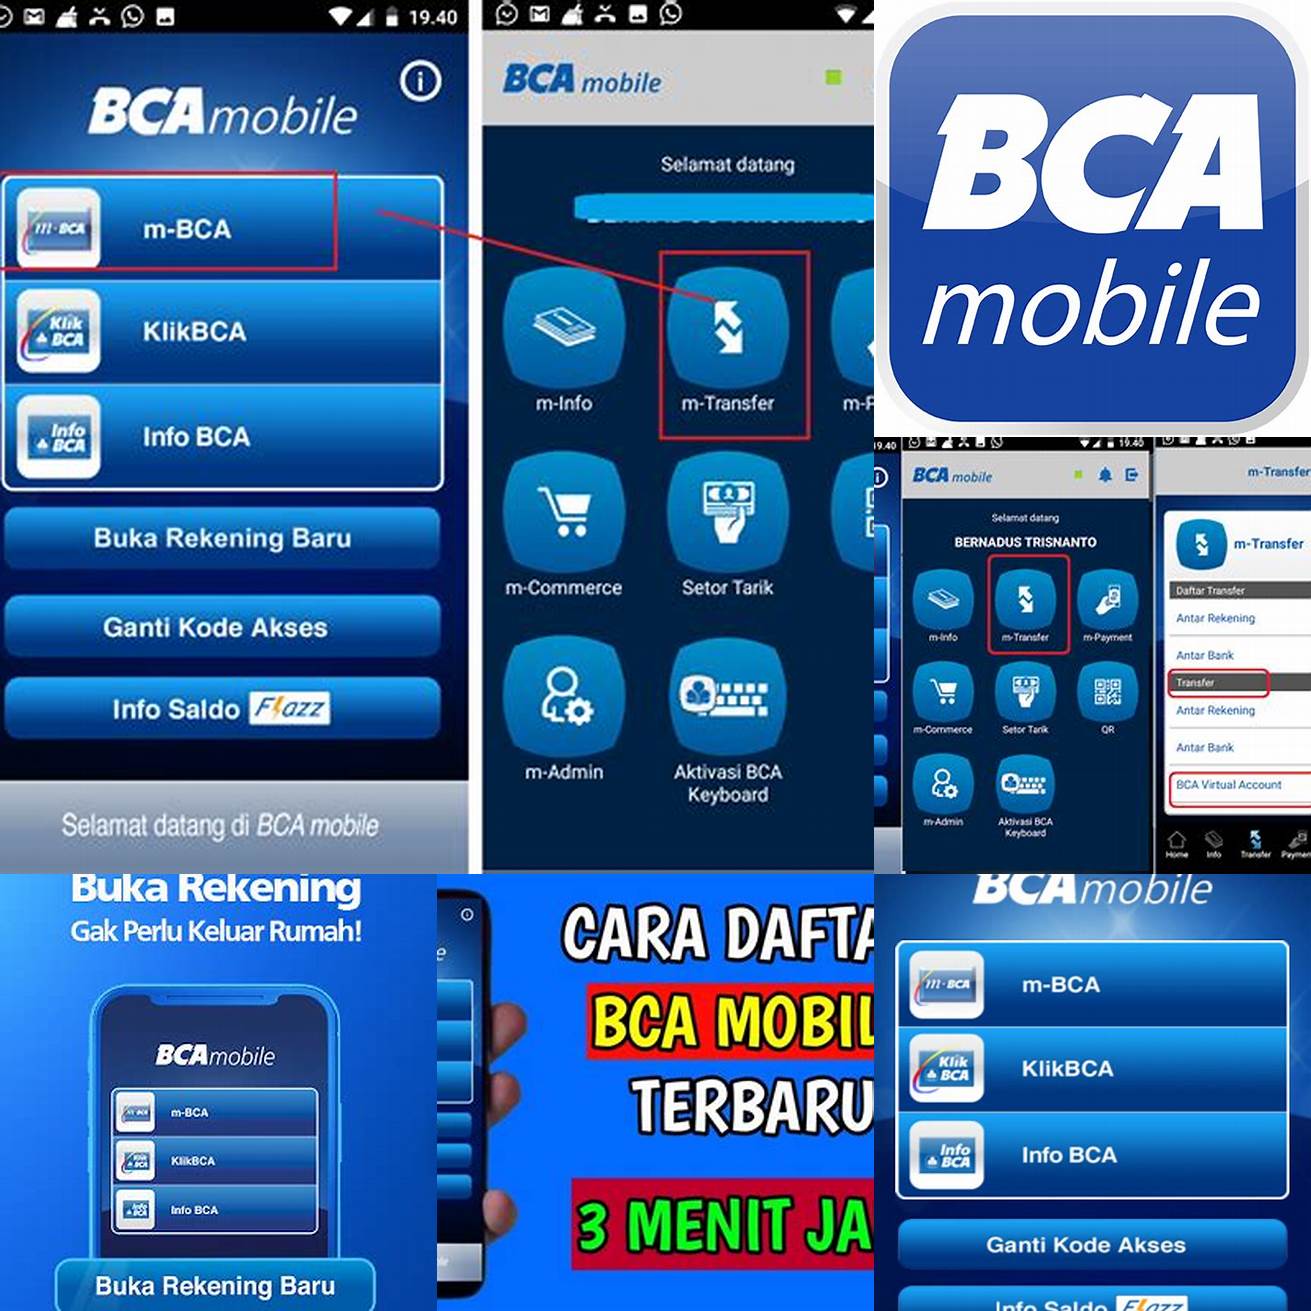 Unduh aplikasi mobile banking BCA di Google Play Store atau App Store